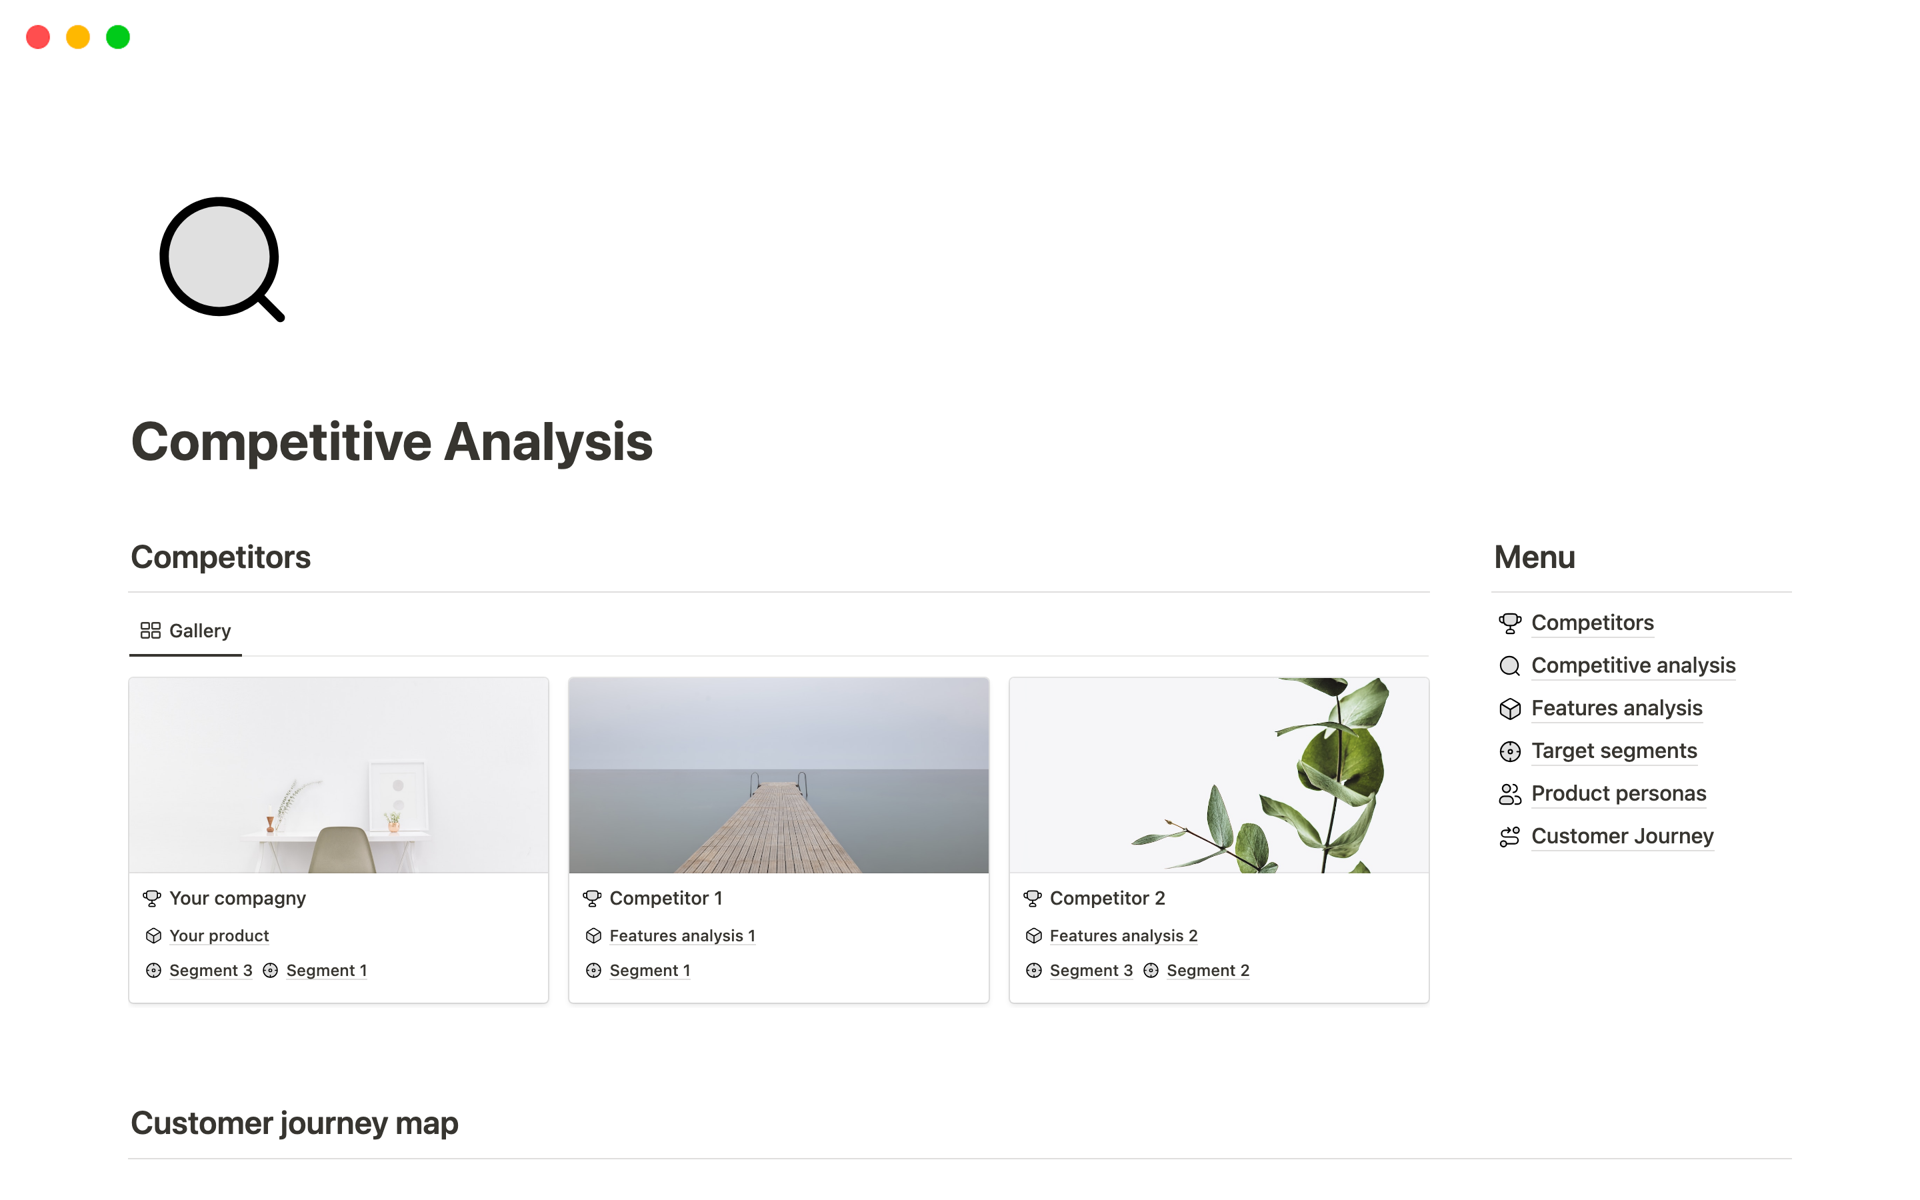 Captura de tela da coleção Top SWOT Analysis Templates for BizOps por Notion